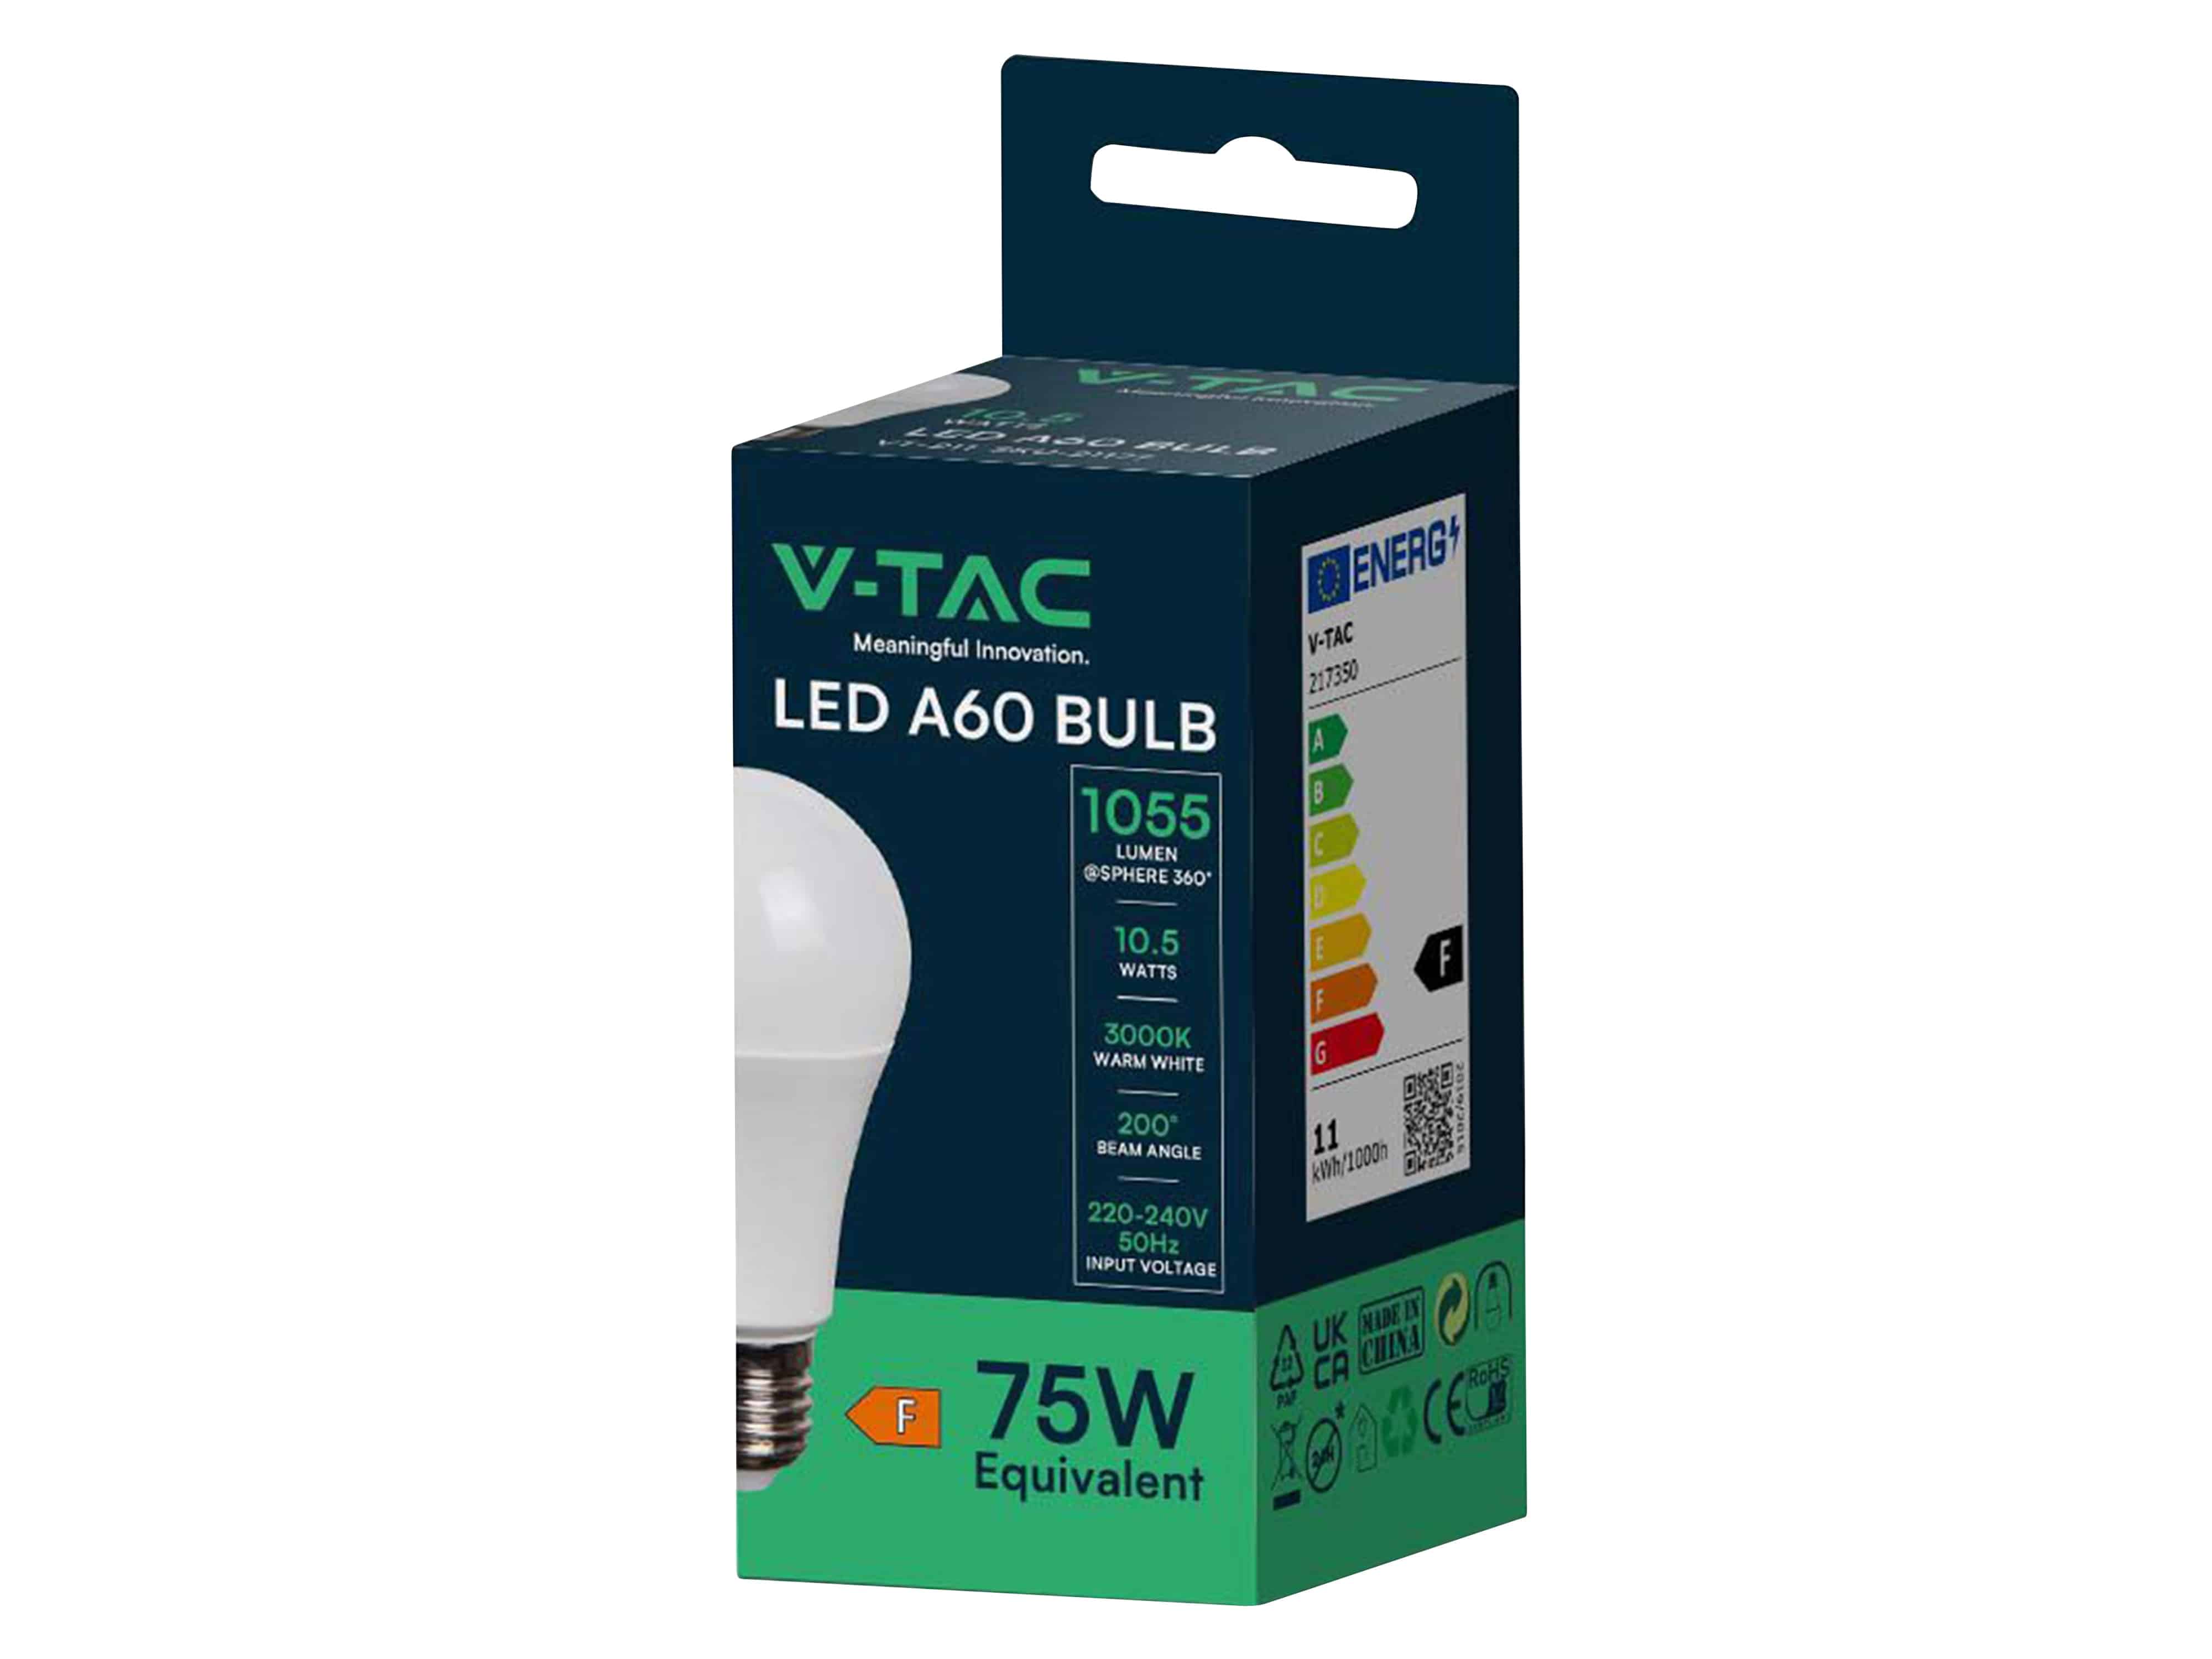 V-TAC LED-Lampe VT-2112-N, E27, 10,5 W, 2700 K, 1055 lm